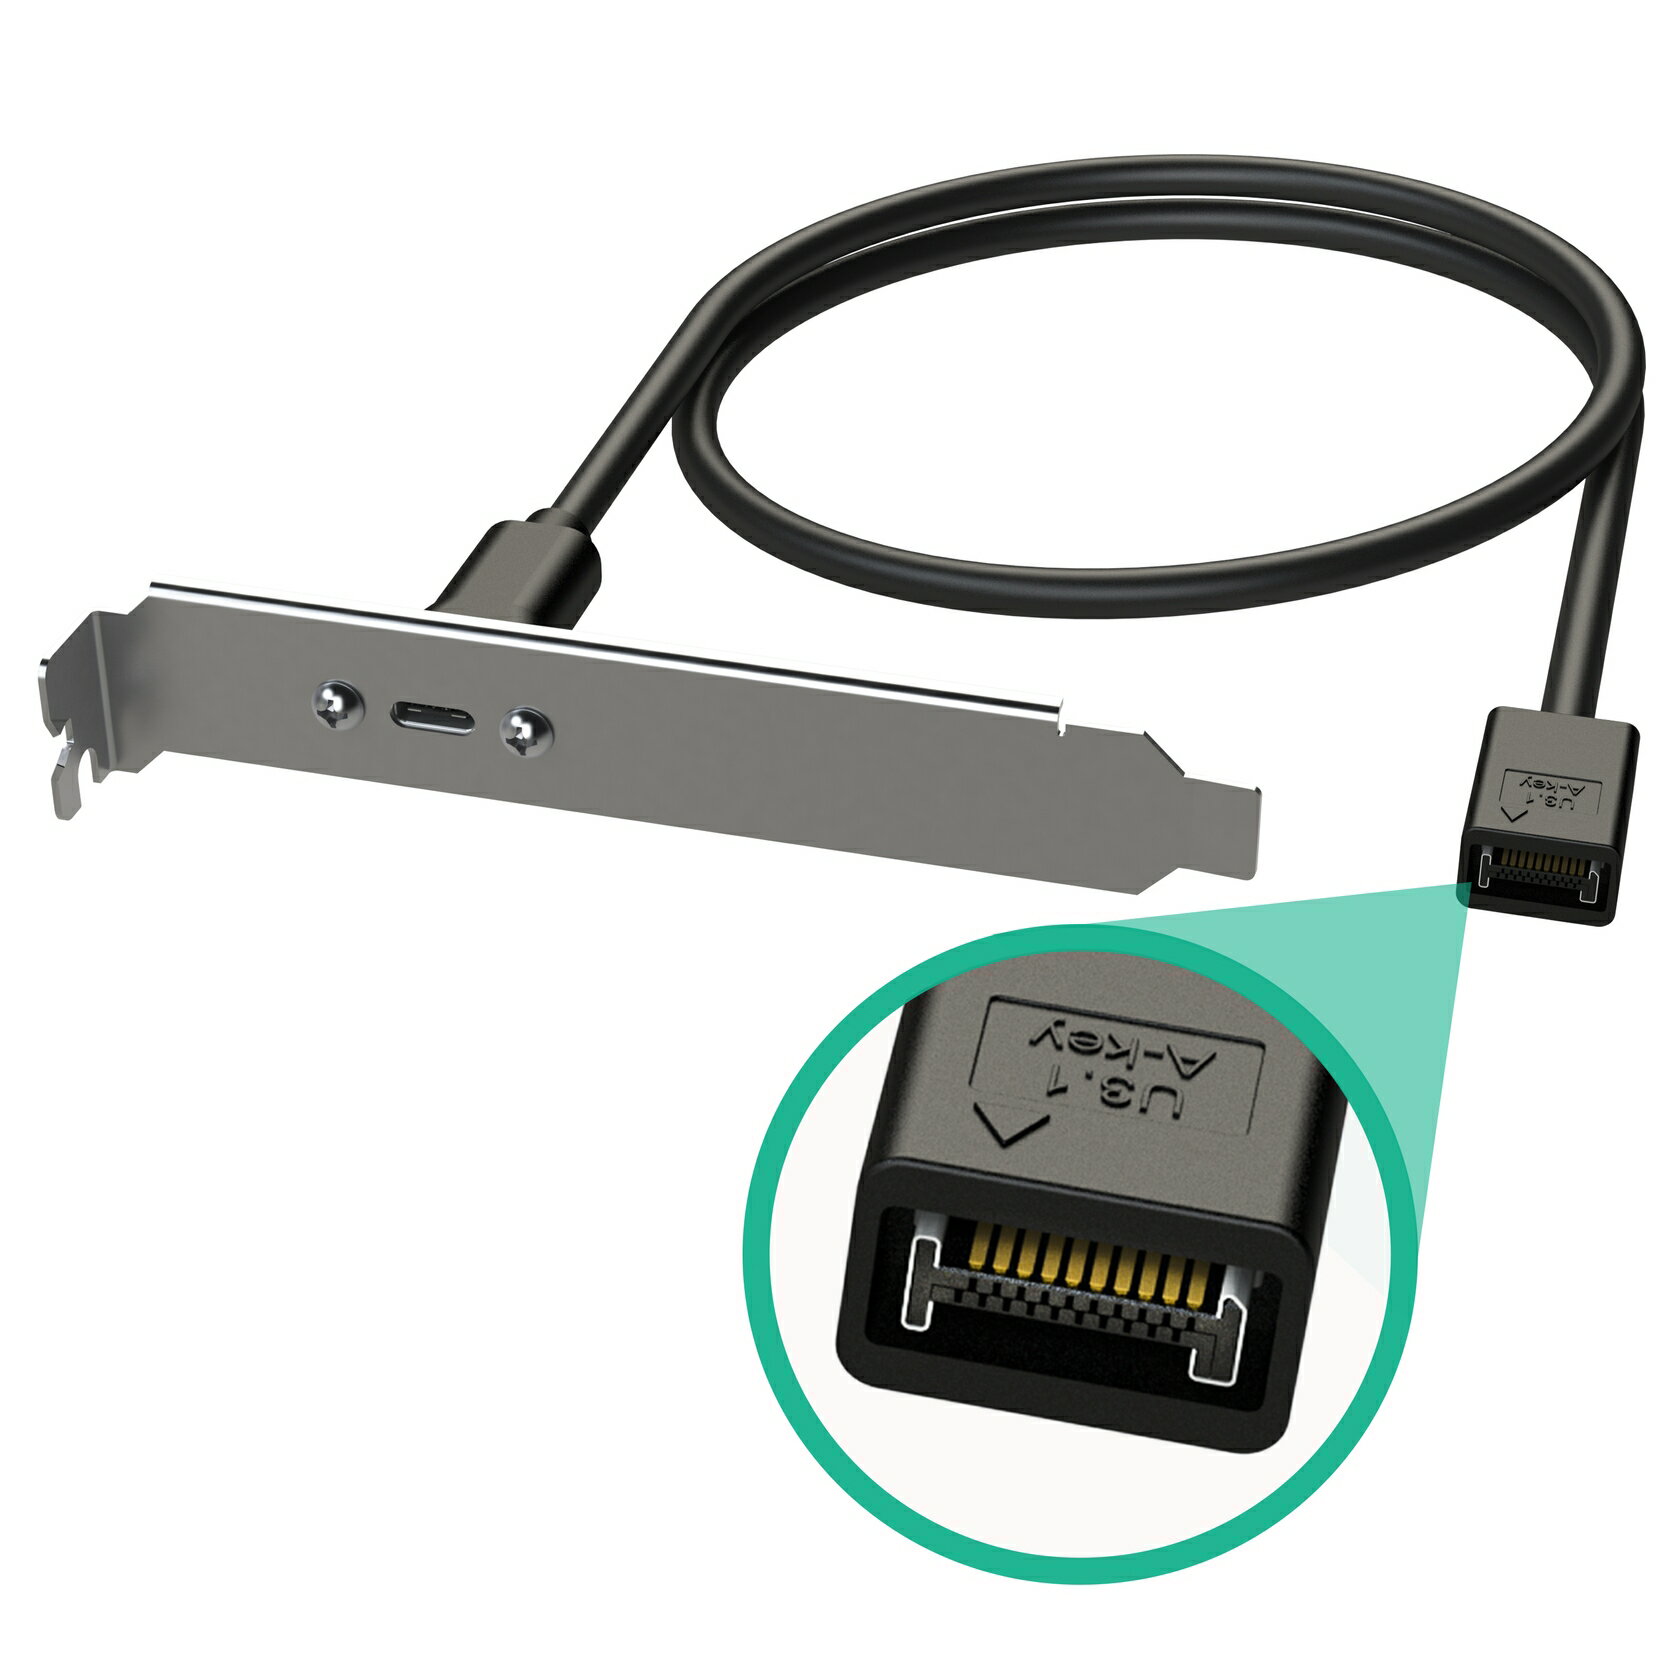 USB 2.0内蔵IDC メスコネクタ- USB 3.0オスコネクタ変換アダプタ テレワーク 在宅ワーク パソコン パーツゲーミングPC ゲーミングPC自作 ゲーミングPCカスタム